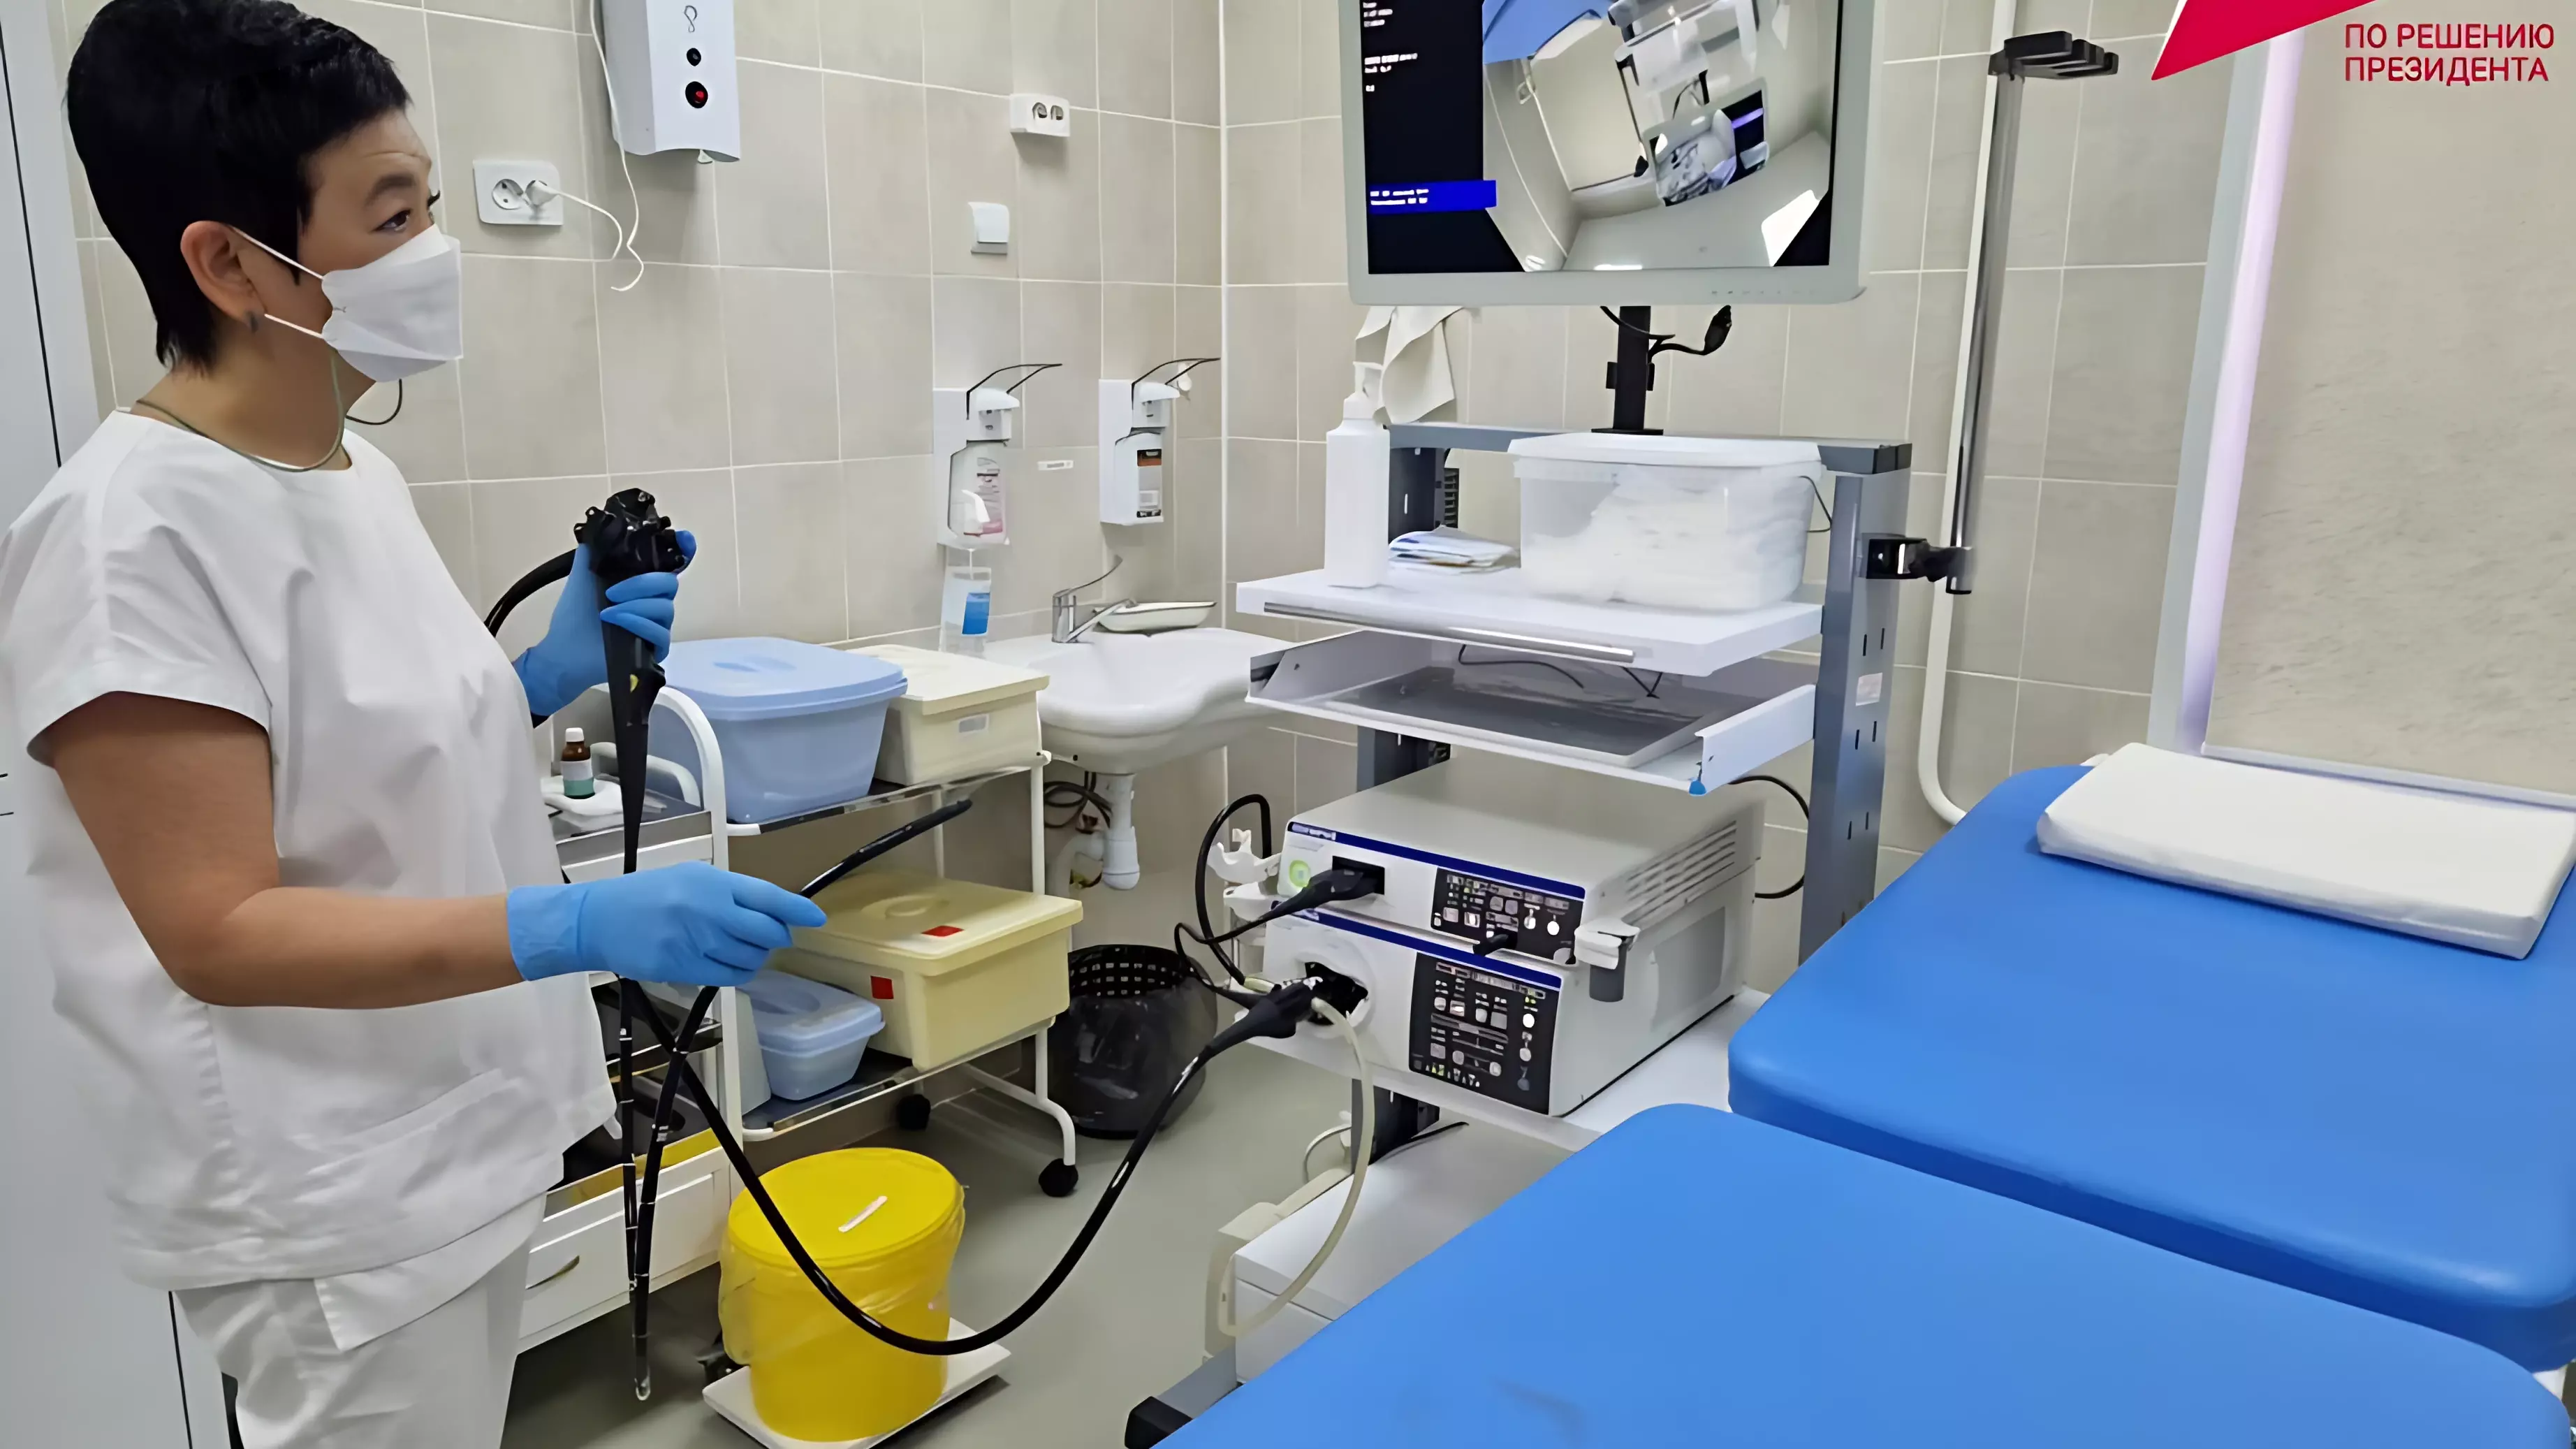 Городская больница №7 Комсомольска-на-Амуре получила новое оборудование по нацпроекту